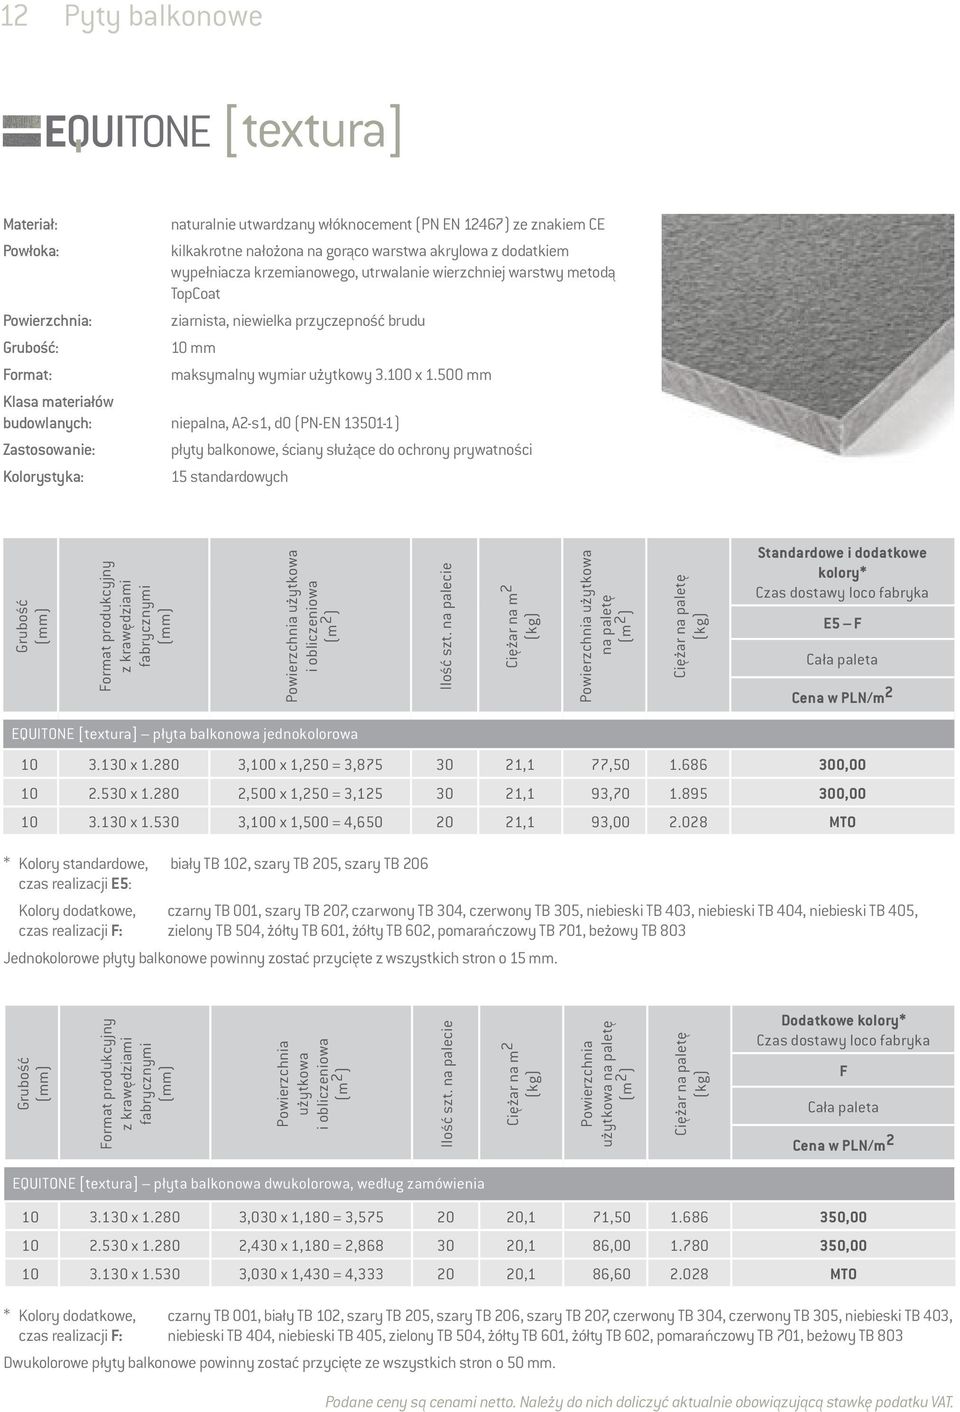 500 mm Klasa materiałów budowlanych: niepalna, A2-s1, d0 (PN-EN 13501-1) Zastosowanie: Kolorystyka: płyty balkonowe, ściany służące do ochrony prywatności 15 standardowych Grubość Format produkcyjny